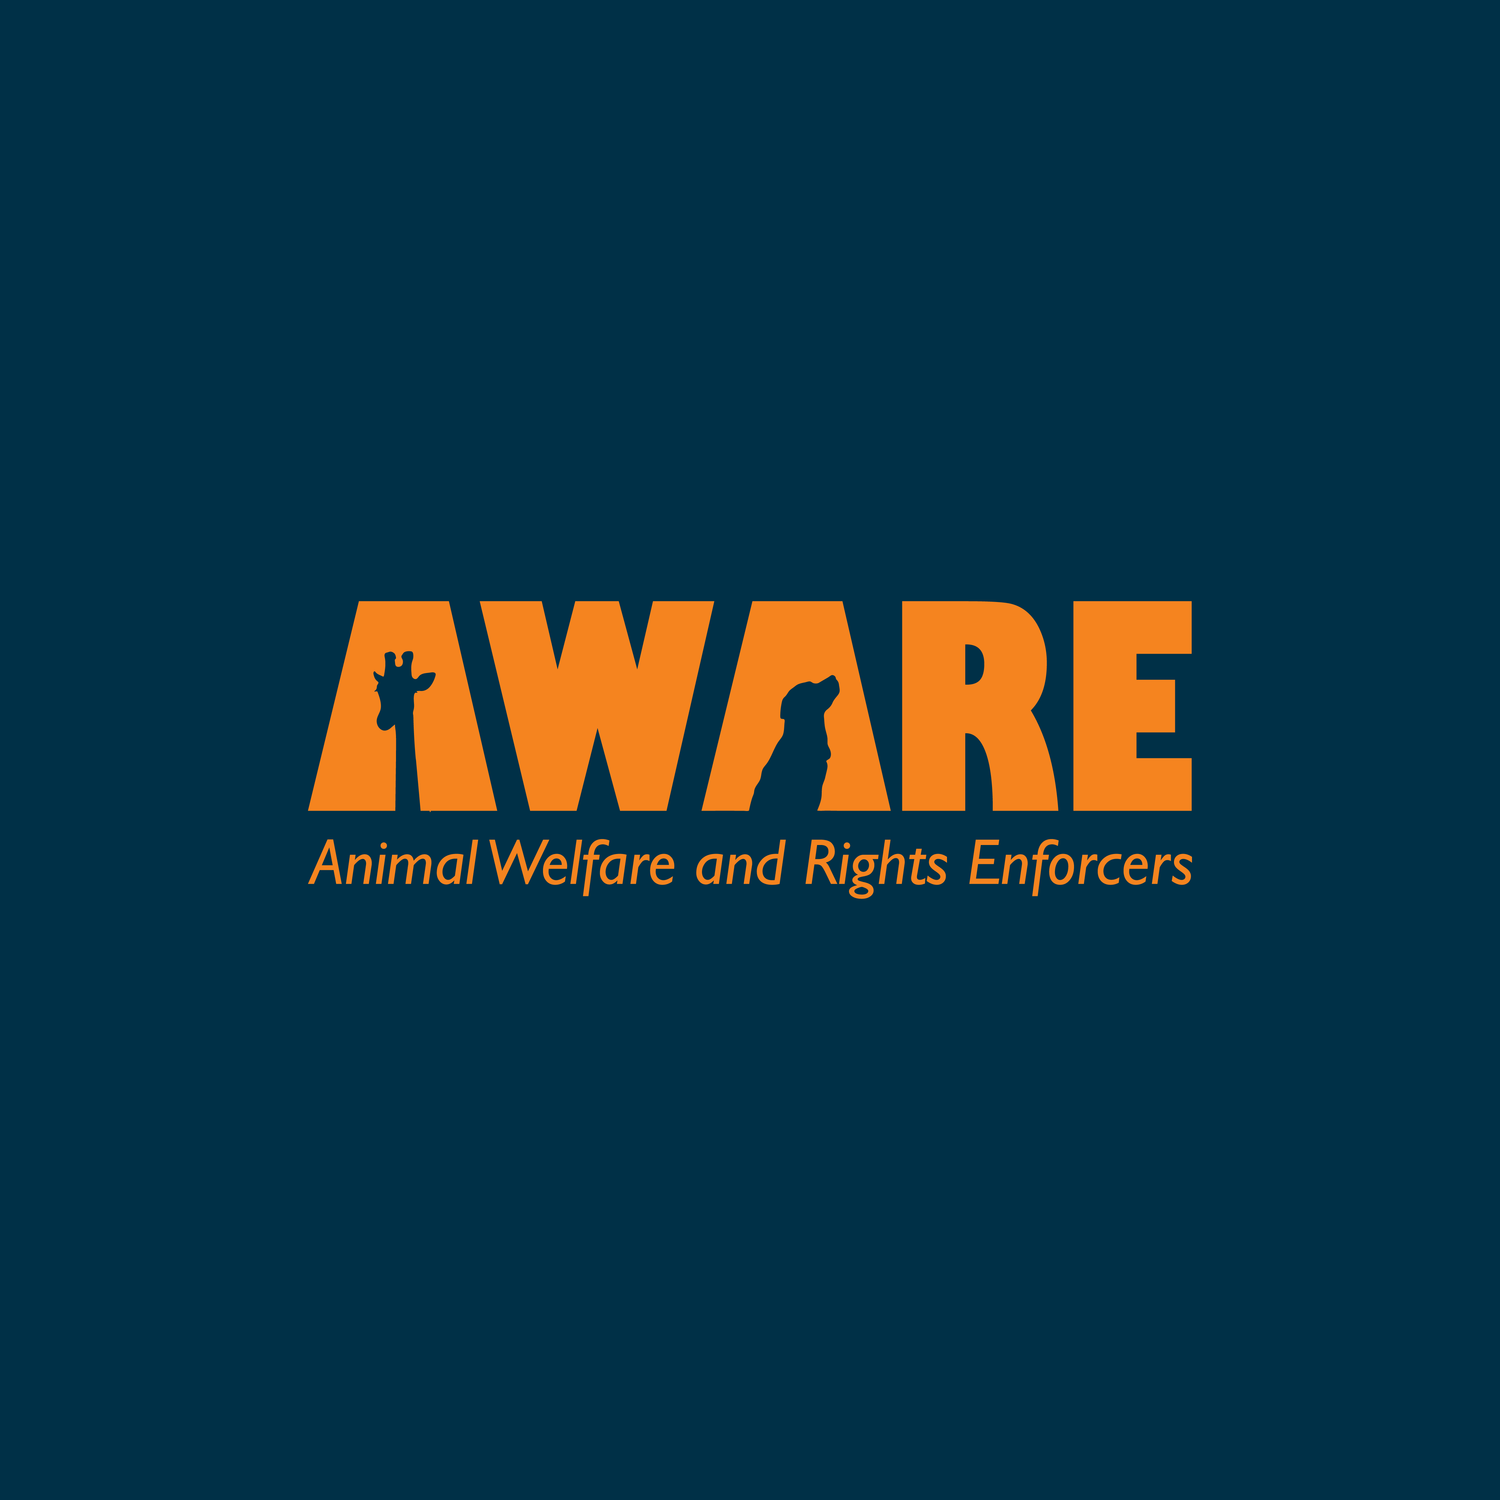 AWARE Branding Design Arttay Designs 2